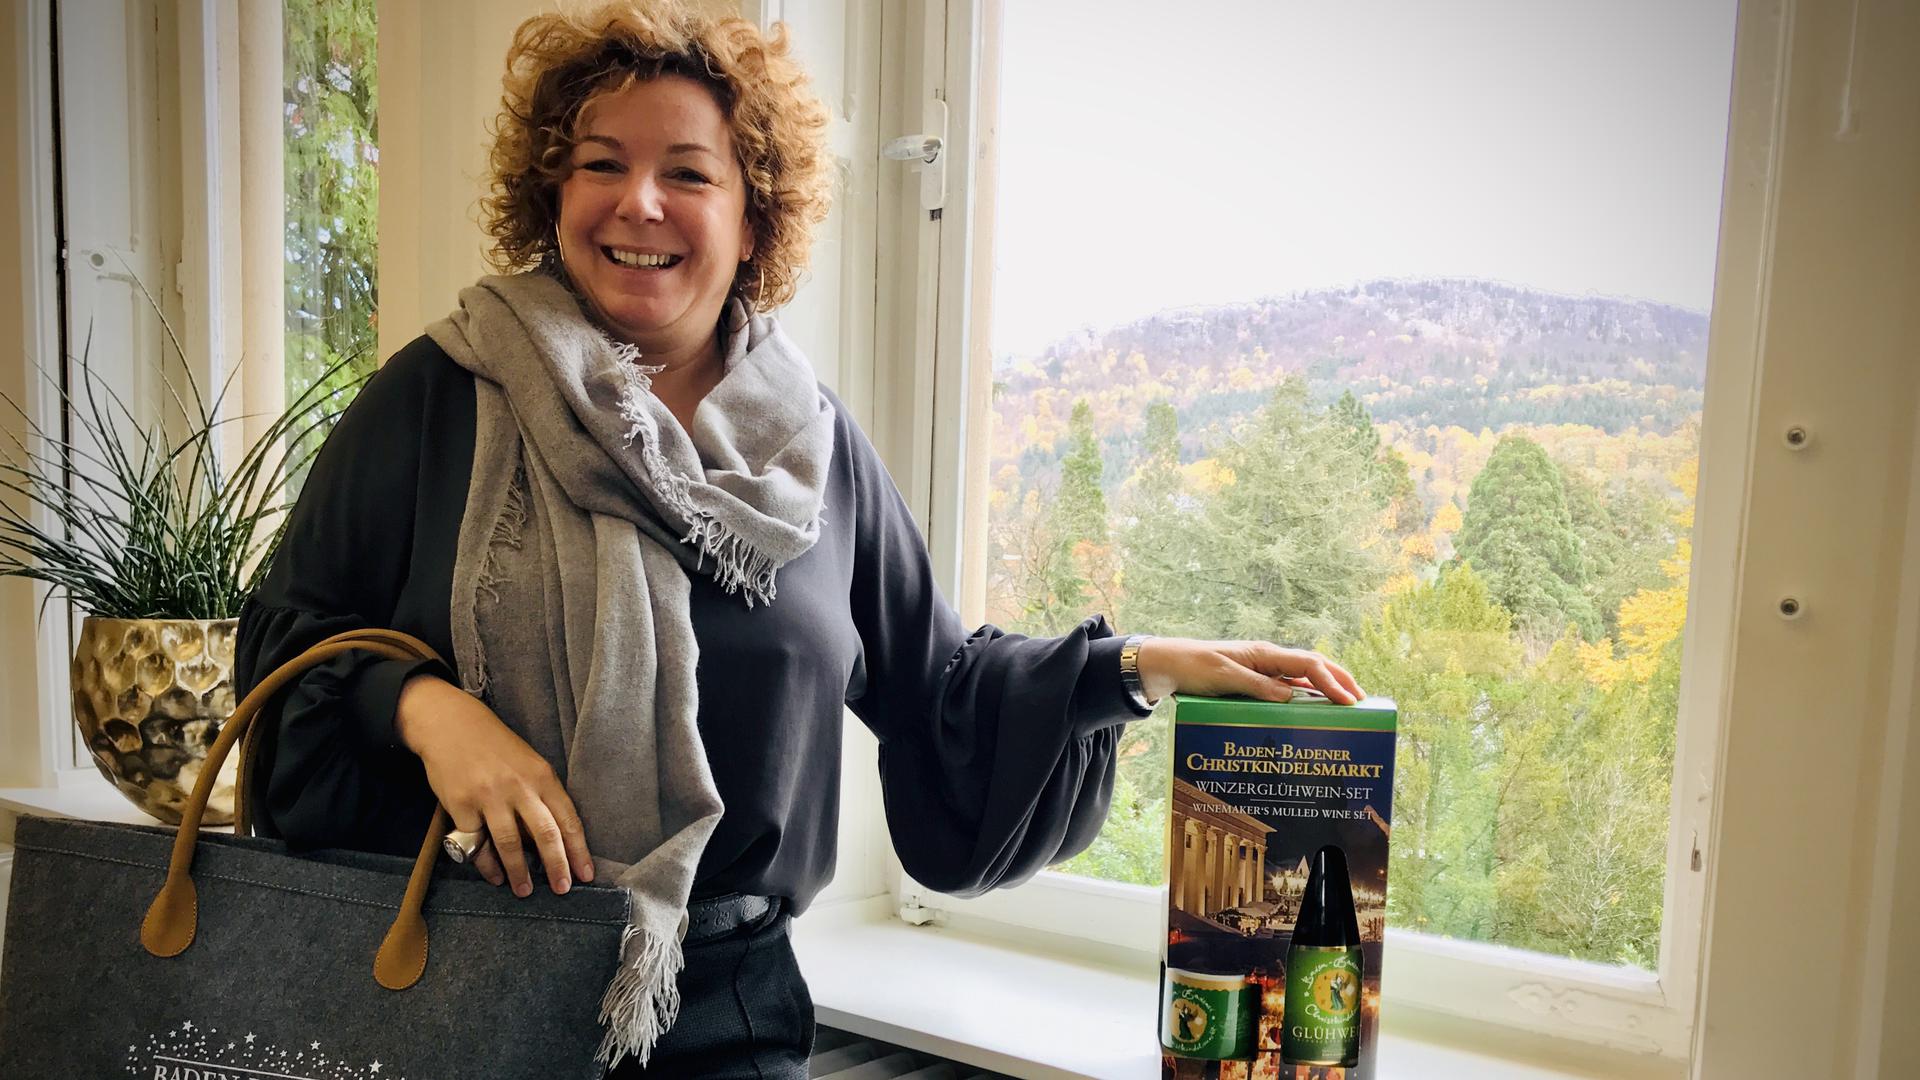 Die Baden-Badener Tourismuschefin Nora Waggershauser zeigt eine Einkaufstasche mit Christkindelsmarkt-Aufdruck und ein Paket mit Winzer-Glühwein und Tasse. 